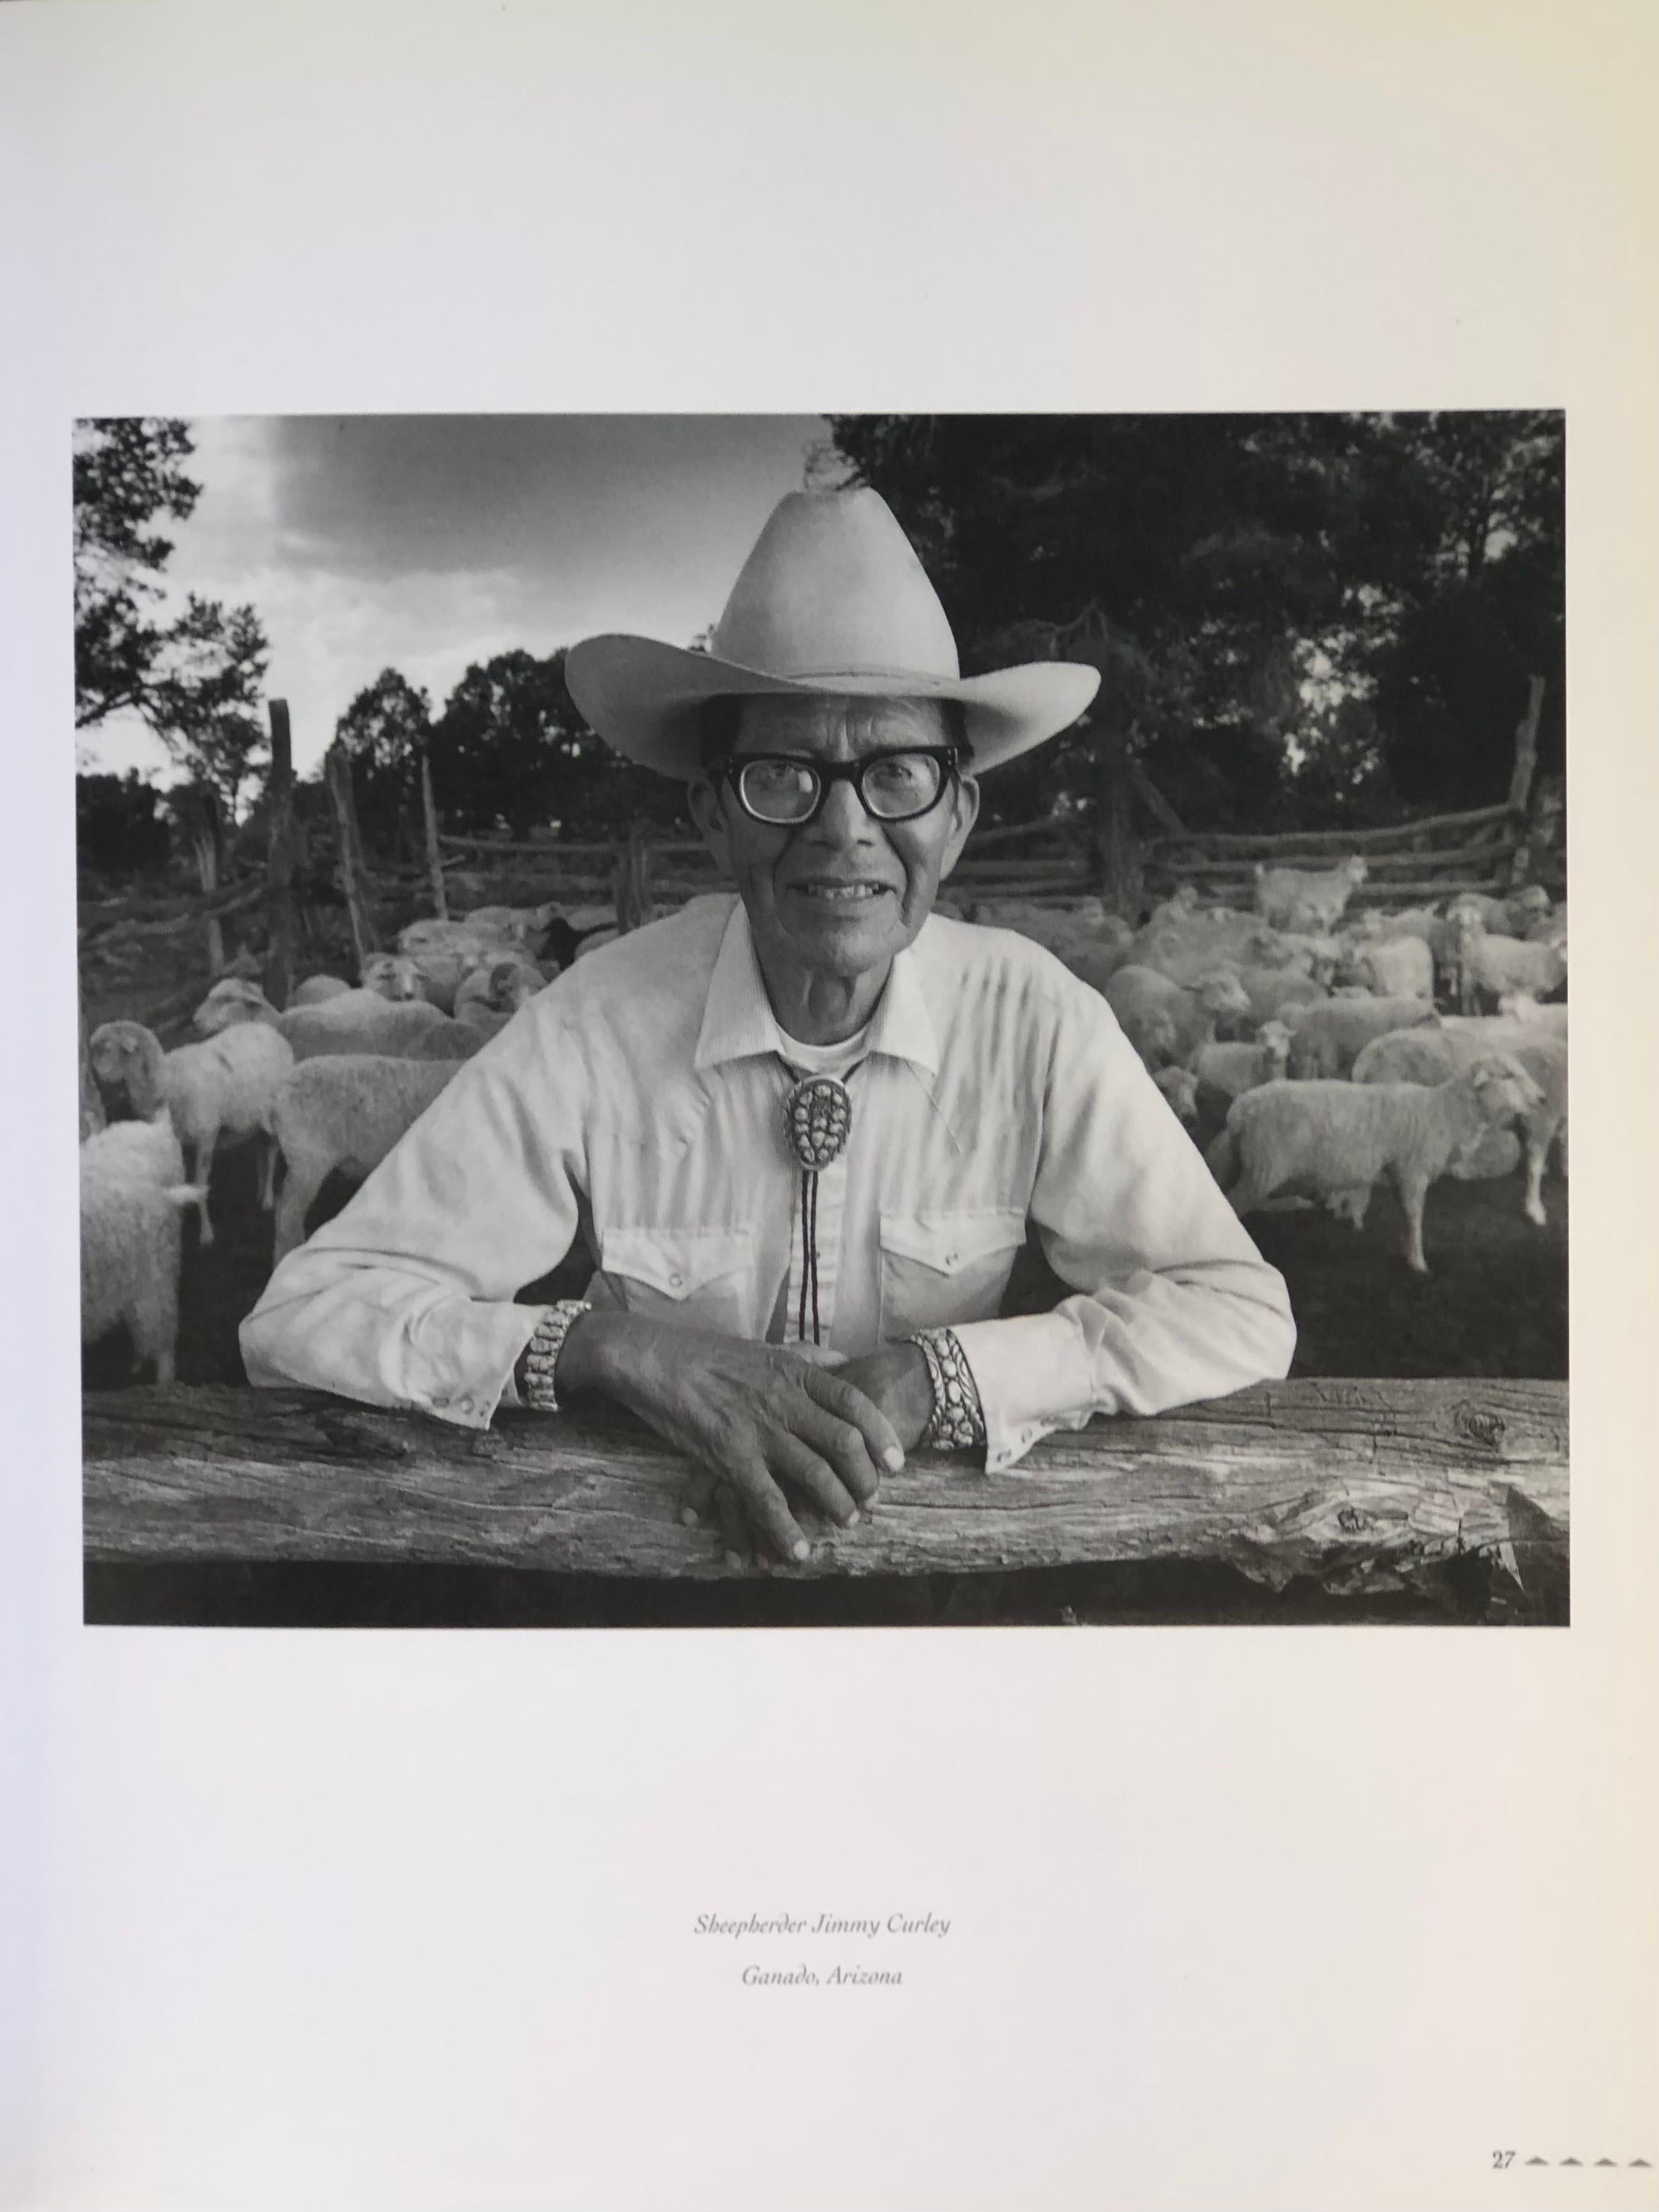 Navajo - Portrait of a Nation, photographie de Joel Grimes. Livre à couverture souple. Première édition, publiée en 1992 par Westcliffe Publishers Inc. à Englewood, Colorado. Imprimé à Singapour. 192 pages.
